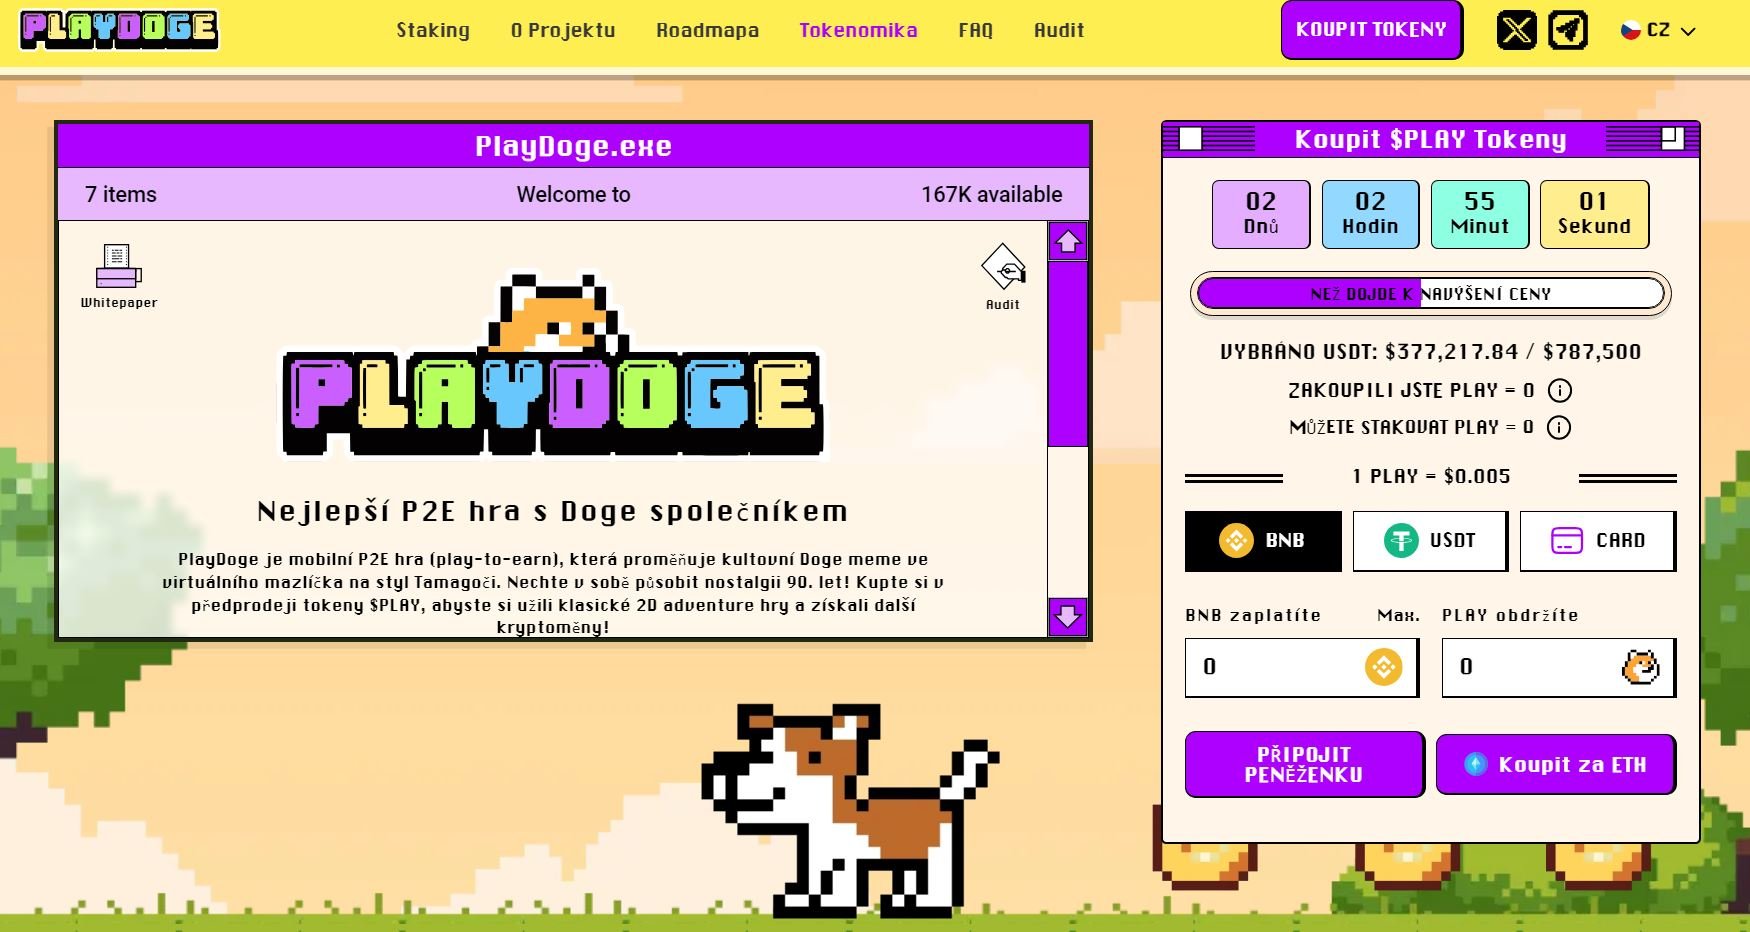 Kryptoměna PlayDoge se již nyní řadí mezi nejznámější kryptoměny díky kombinaci meme Doge s fenoménem Tamagotchi 